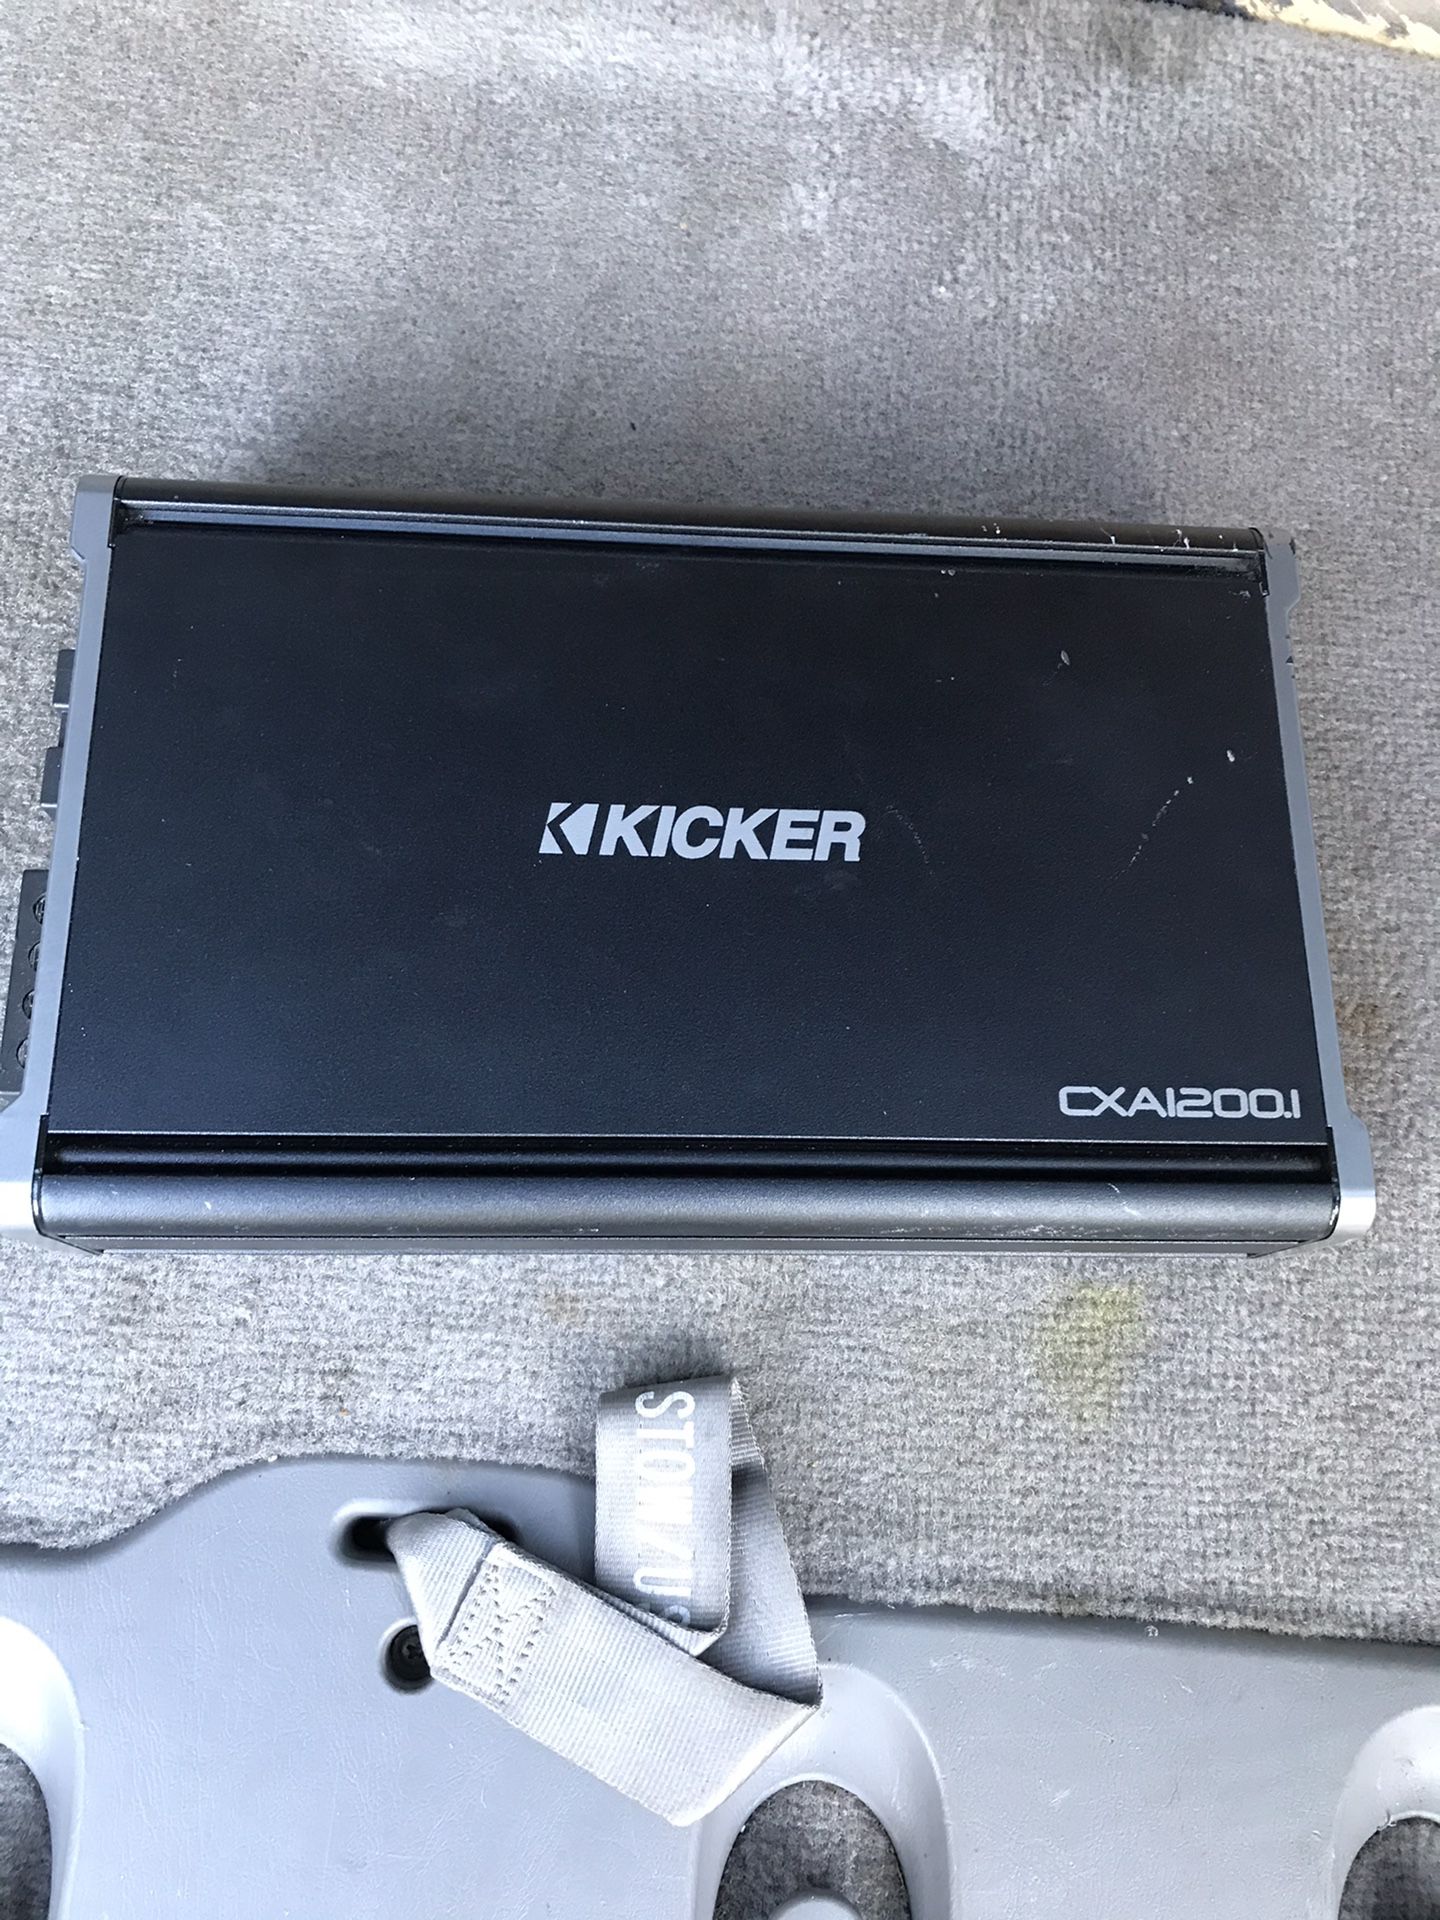 Kicker cxa1200.1